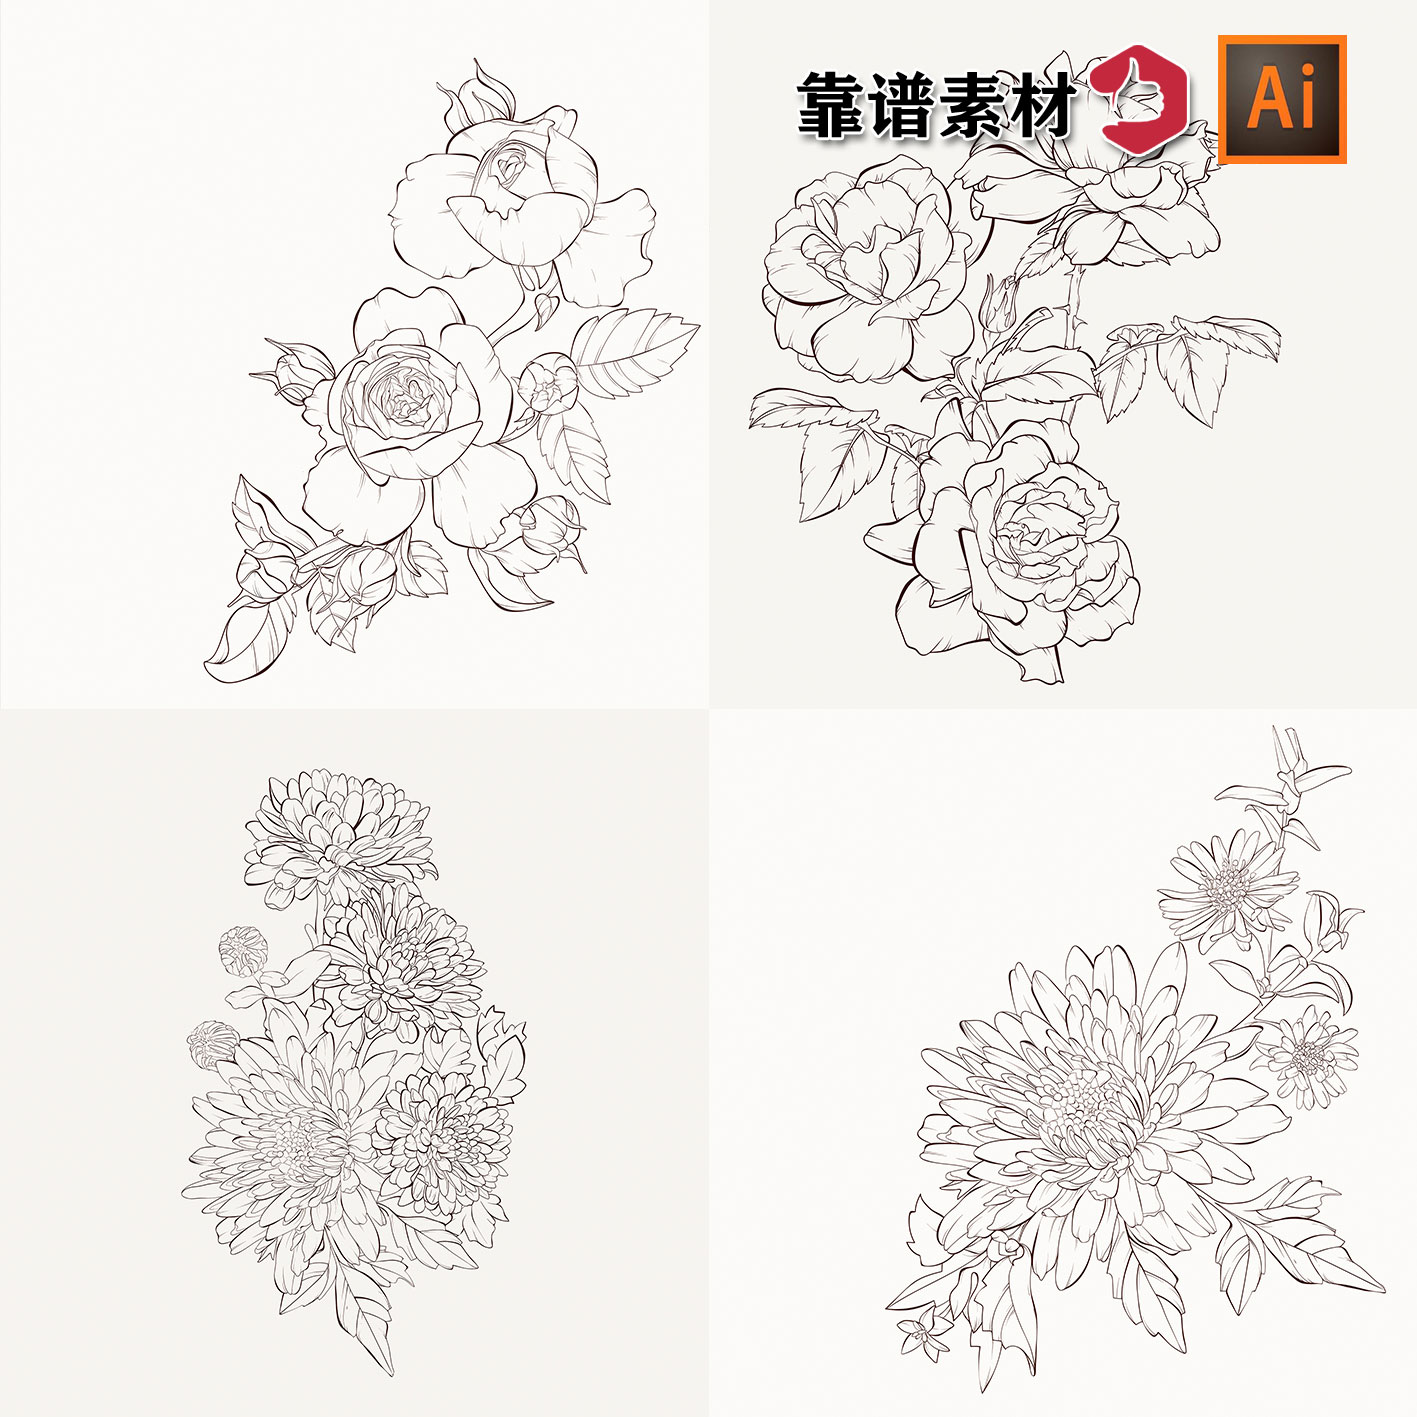 手绘素描线描白描线条玉兰花梅花中国风鲜花插画AI矢量设计素材